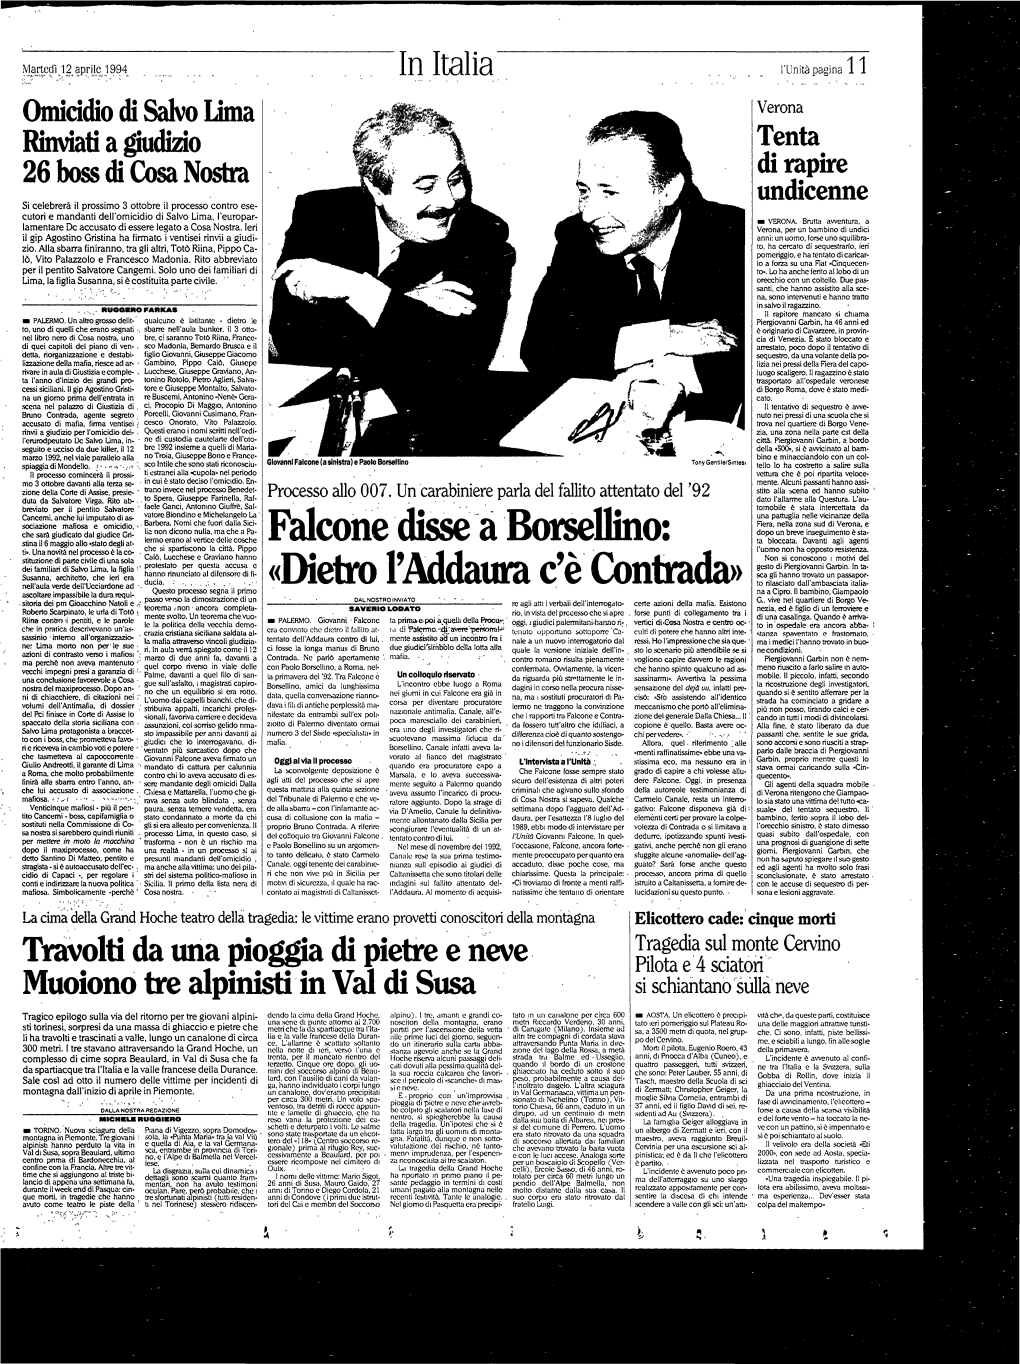 Falcone Disse a Borsellino: Ta Bloccata